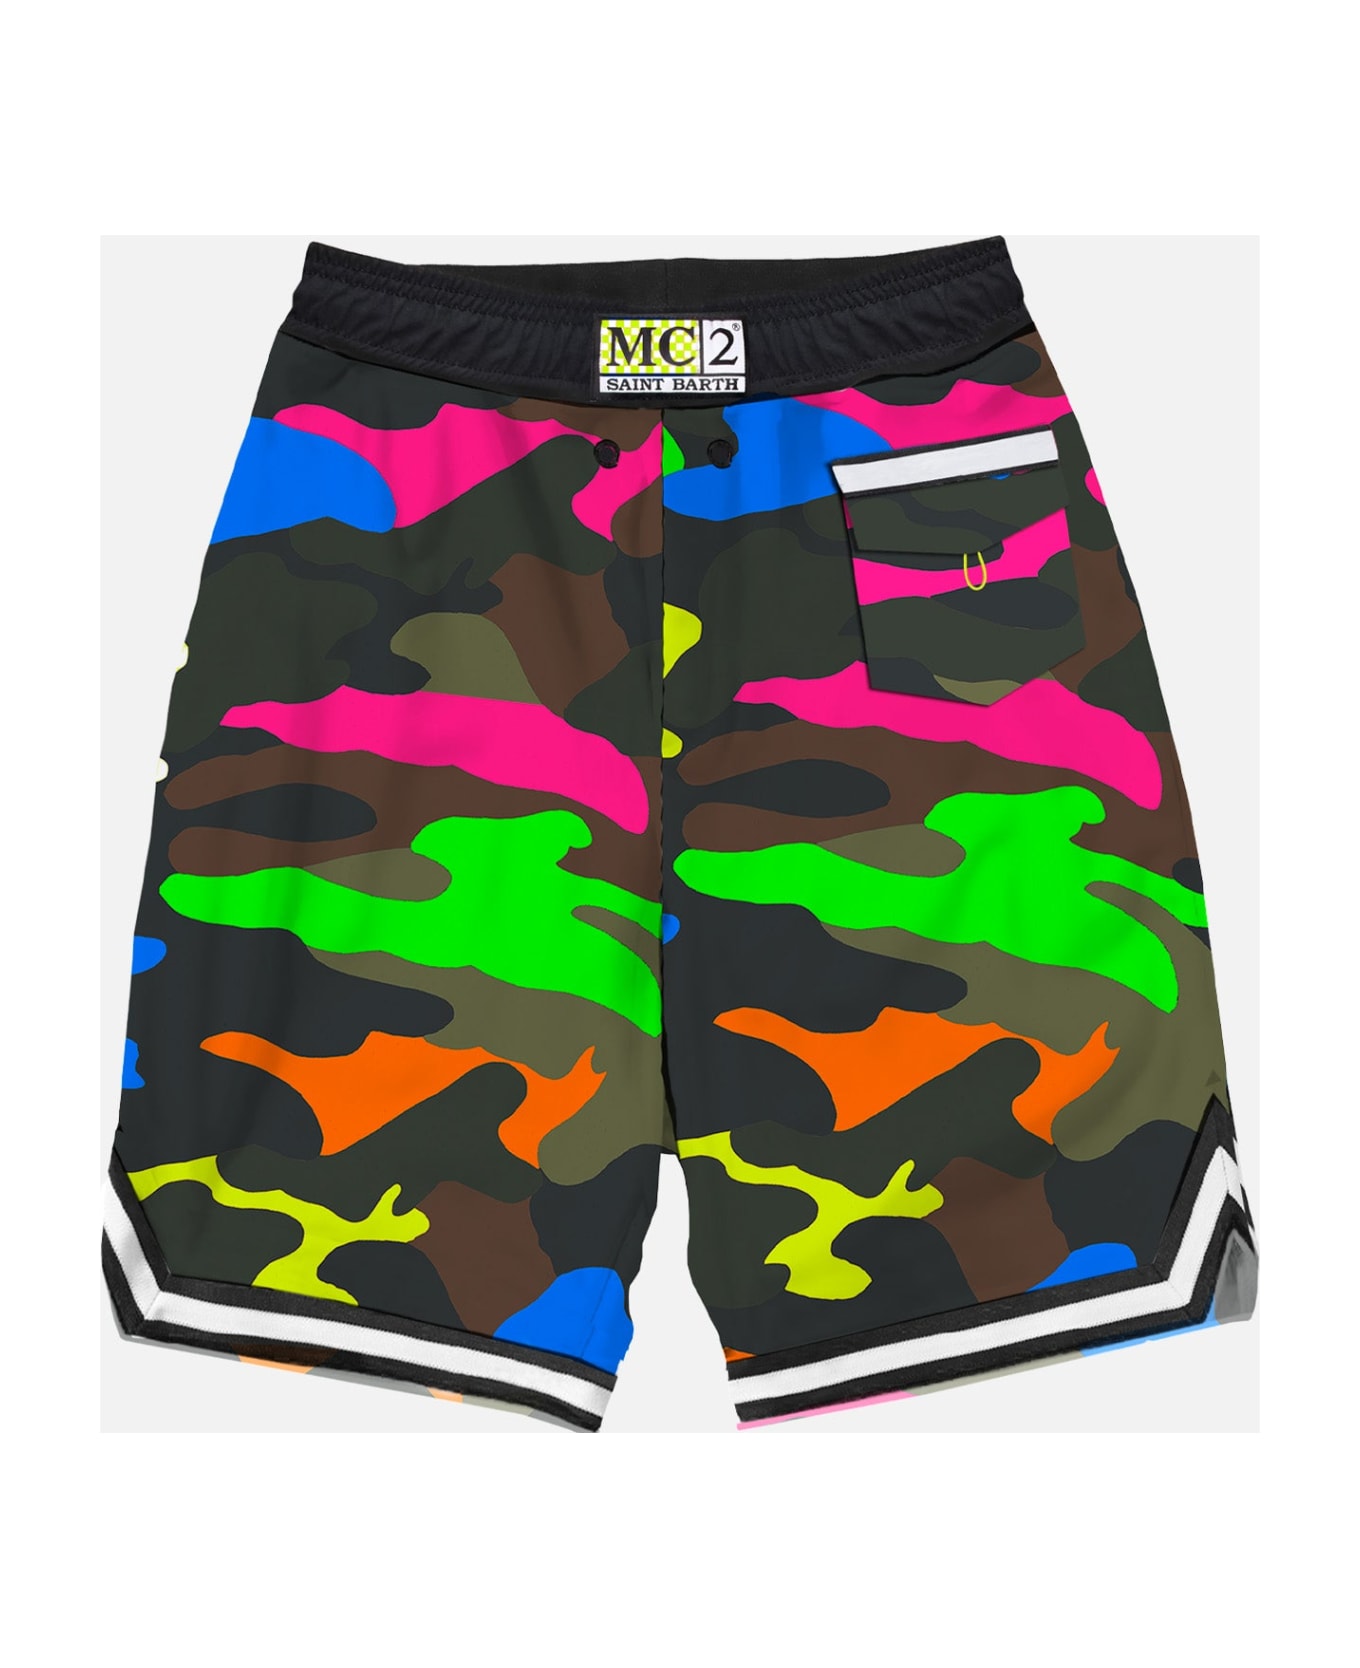 MC2 Saint Barth Camouflage Fluo Multicolor Swim Shorts Surf Style - FLUO スイムトランクス